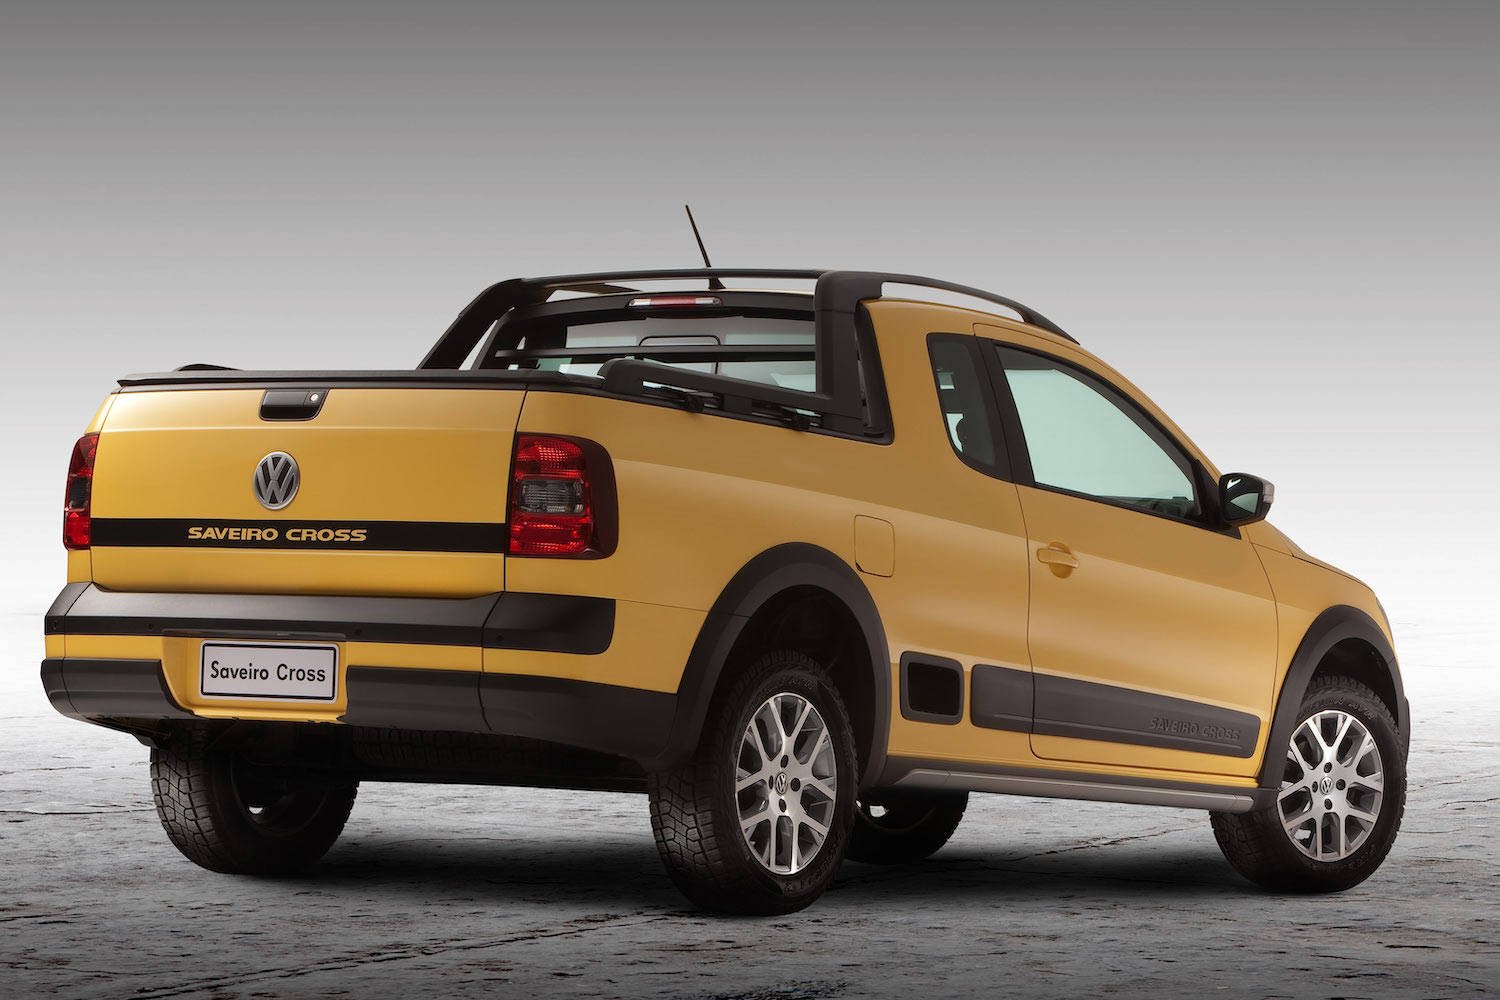 volkswagen saveiro cross 2014 amarela frente lateral traseira interior movimento 2